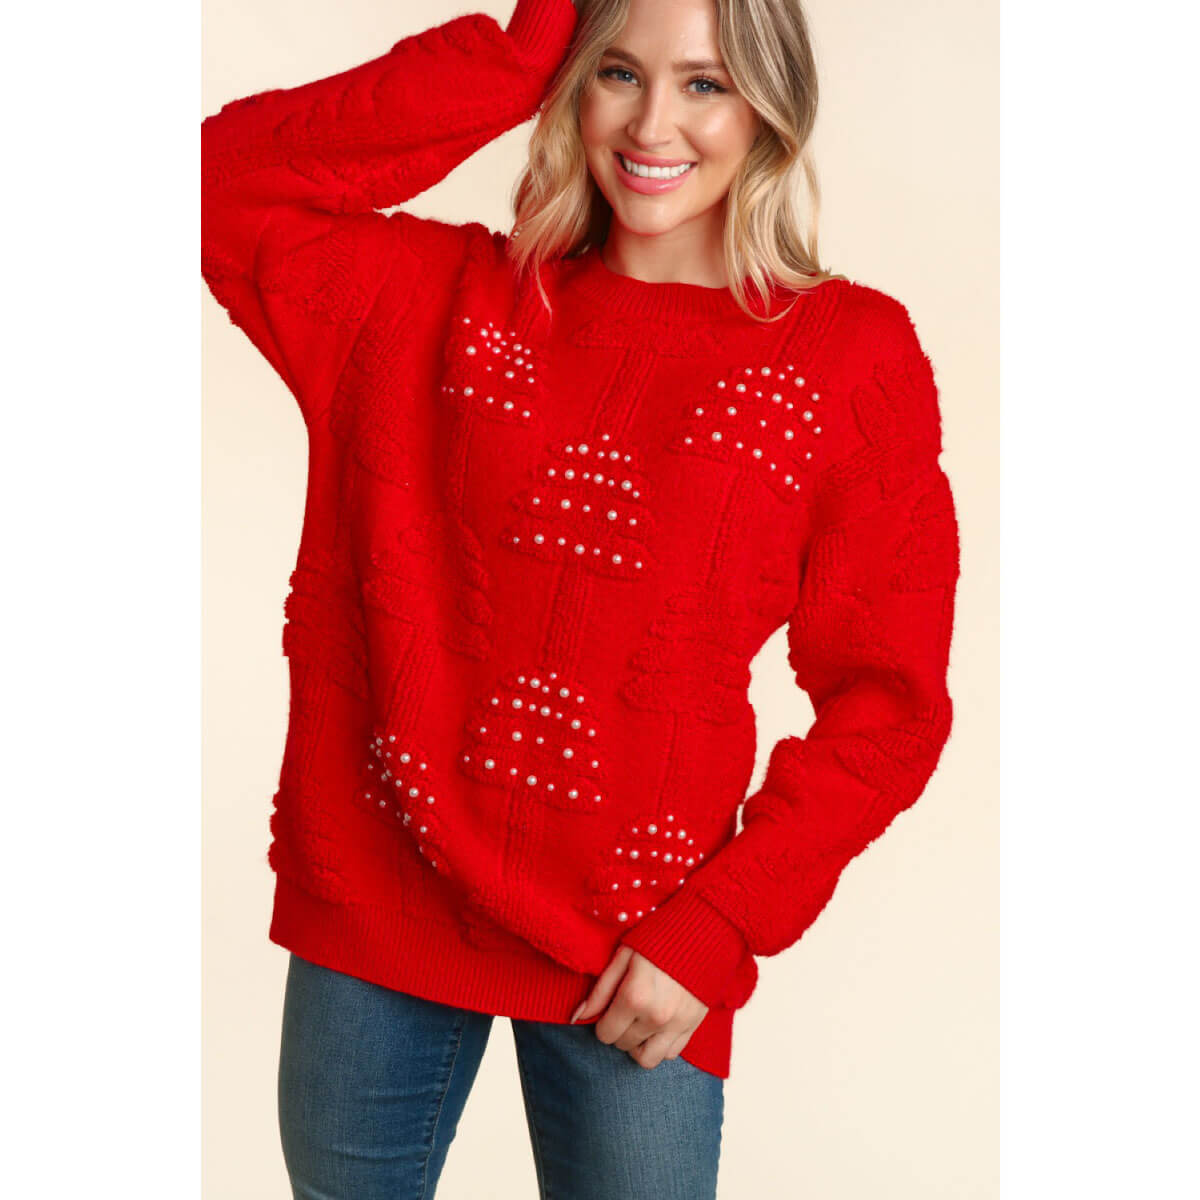 22 Cute Oversized Sweaters for Women